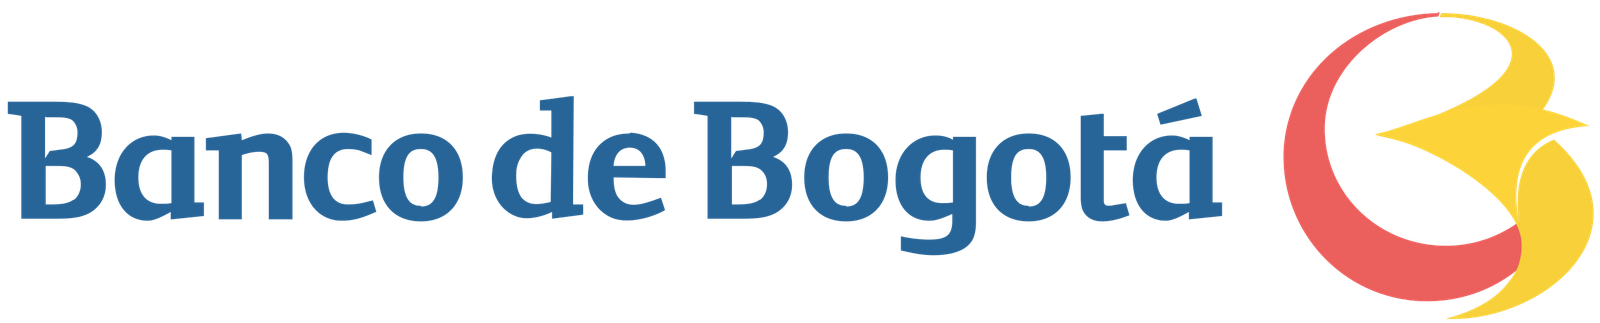 Banco_de_Bogotá_logo.svg